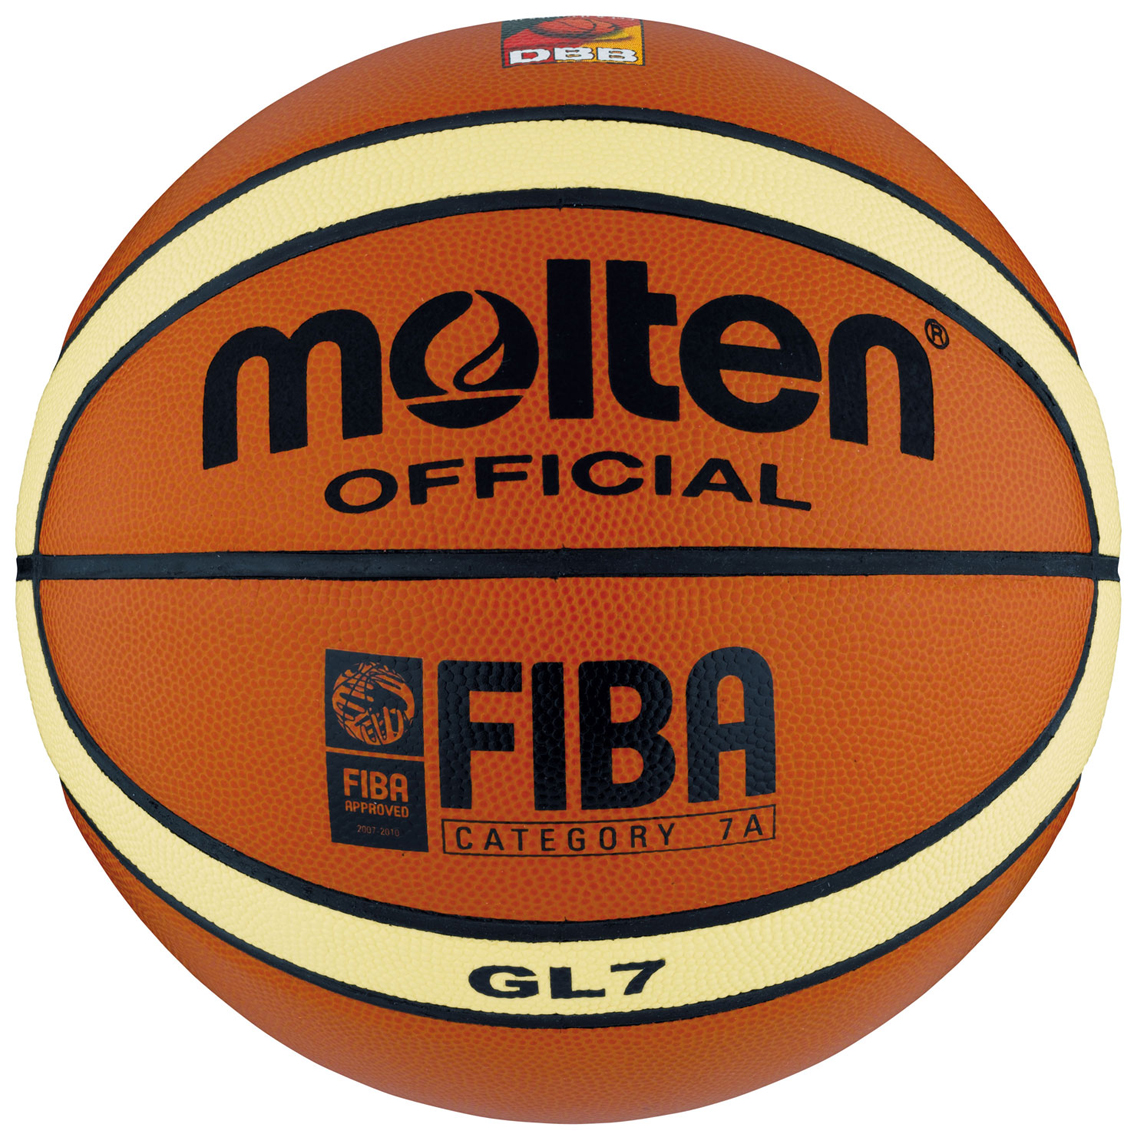 Basketball (ball)